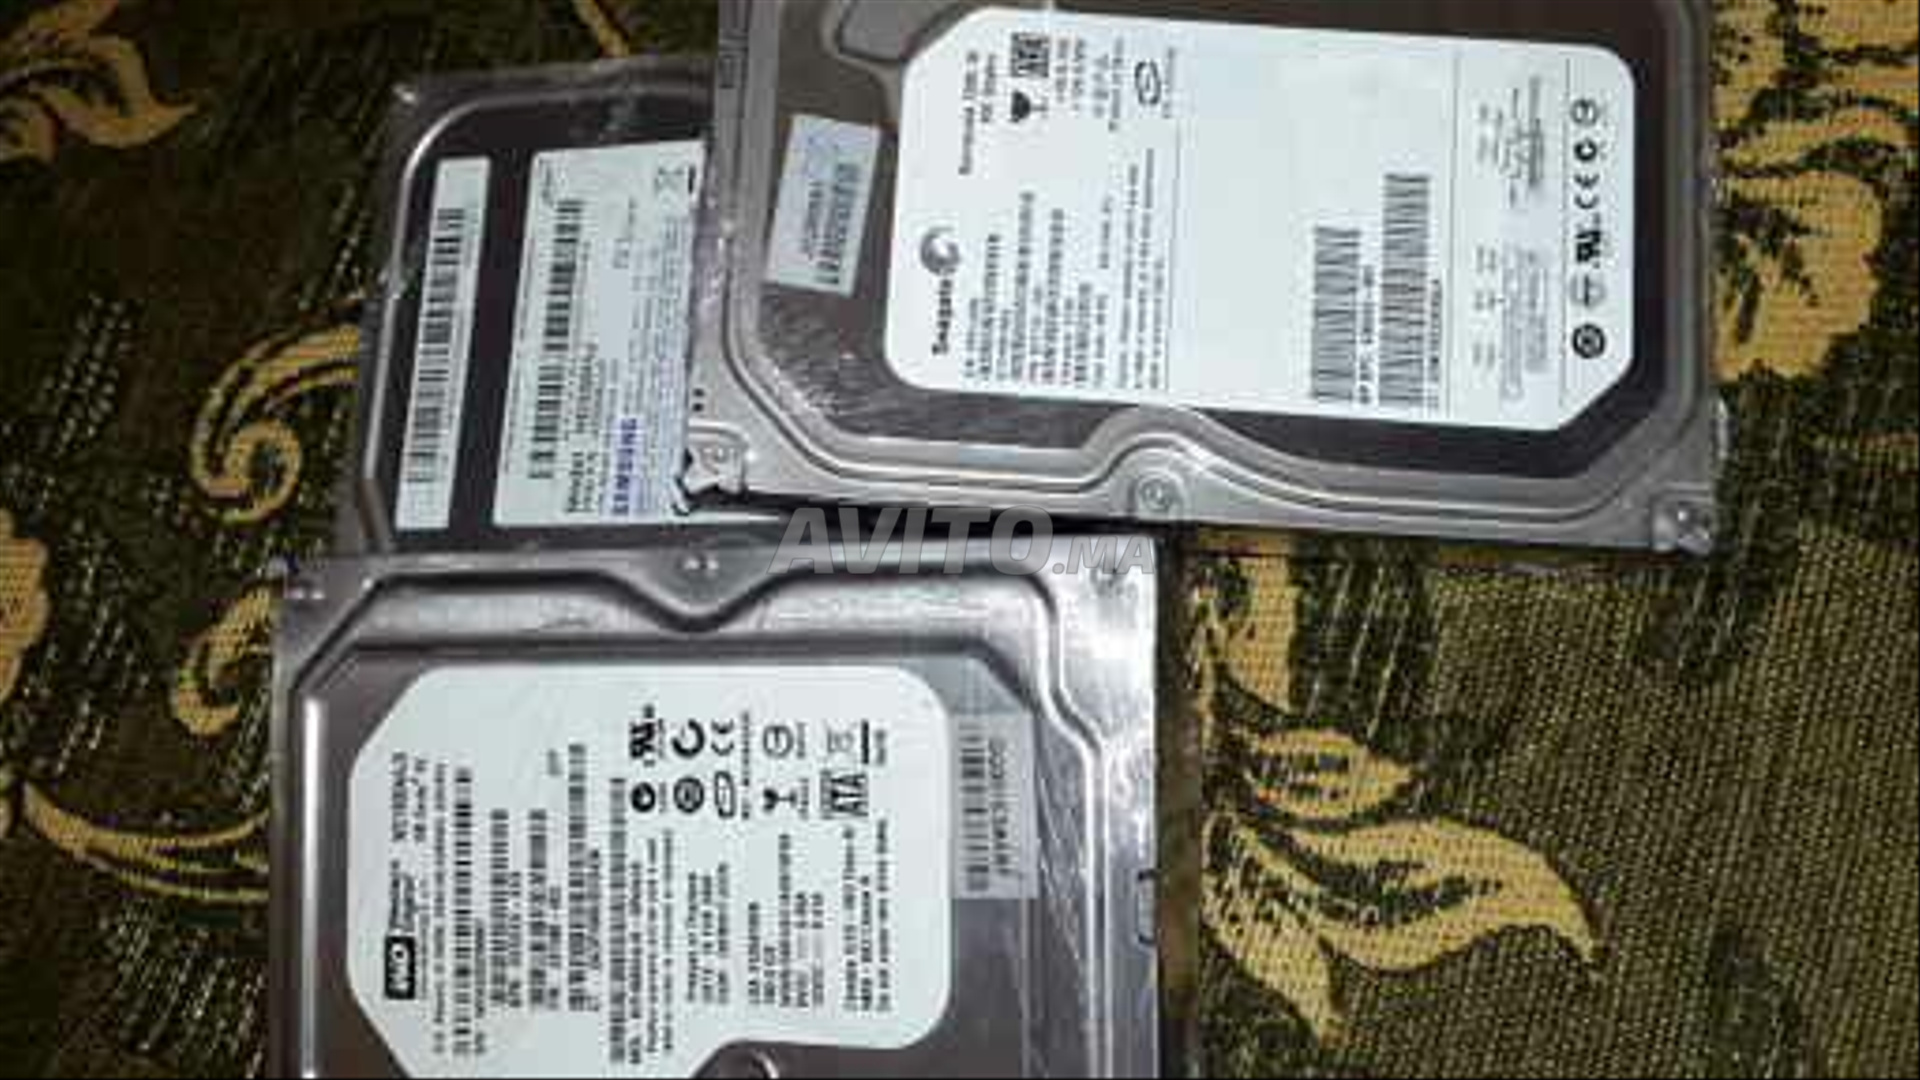 Disque dur interne 500Go SATA 2,5  pour PC portable (DA6513) à 550,00 MAD  -  MAROC